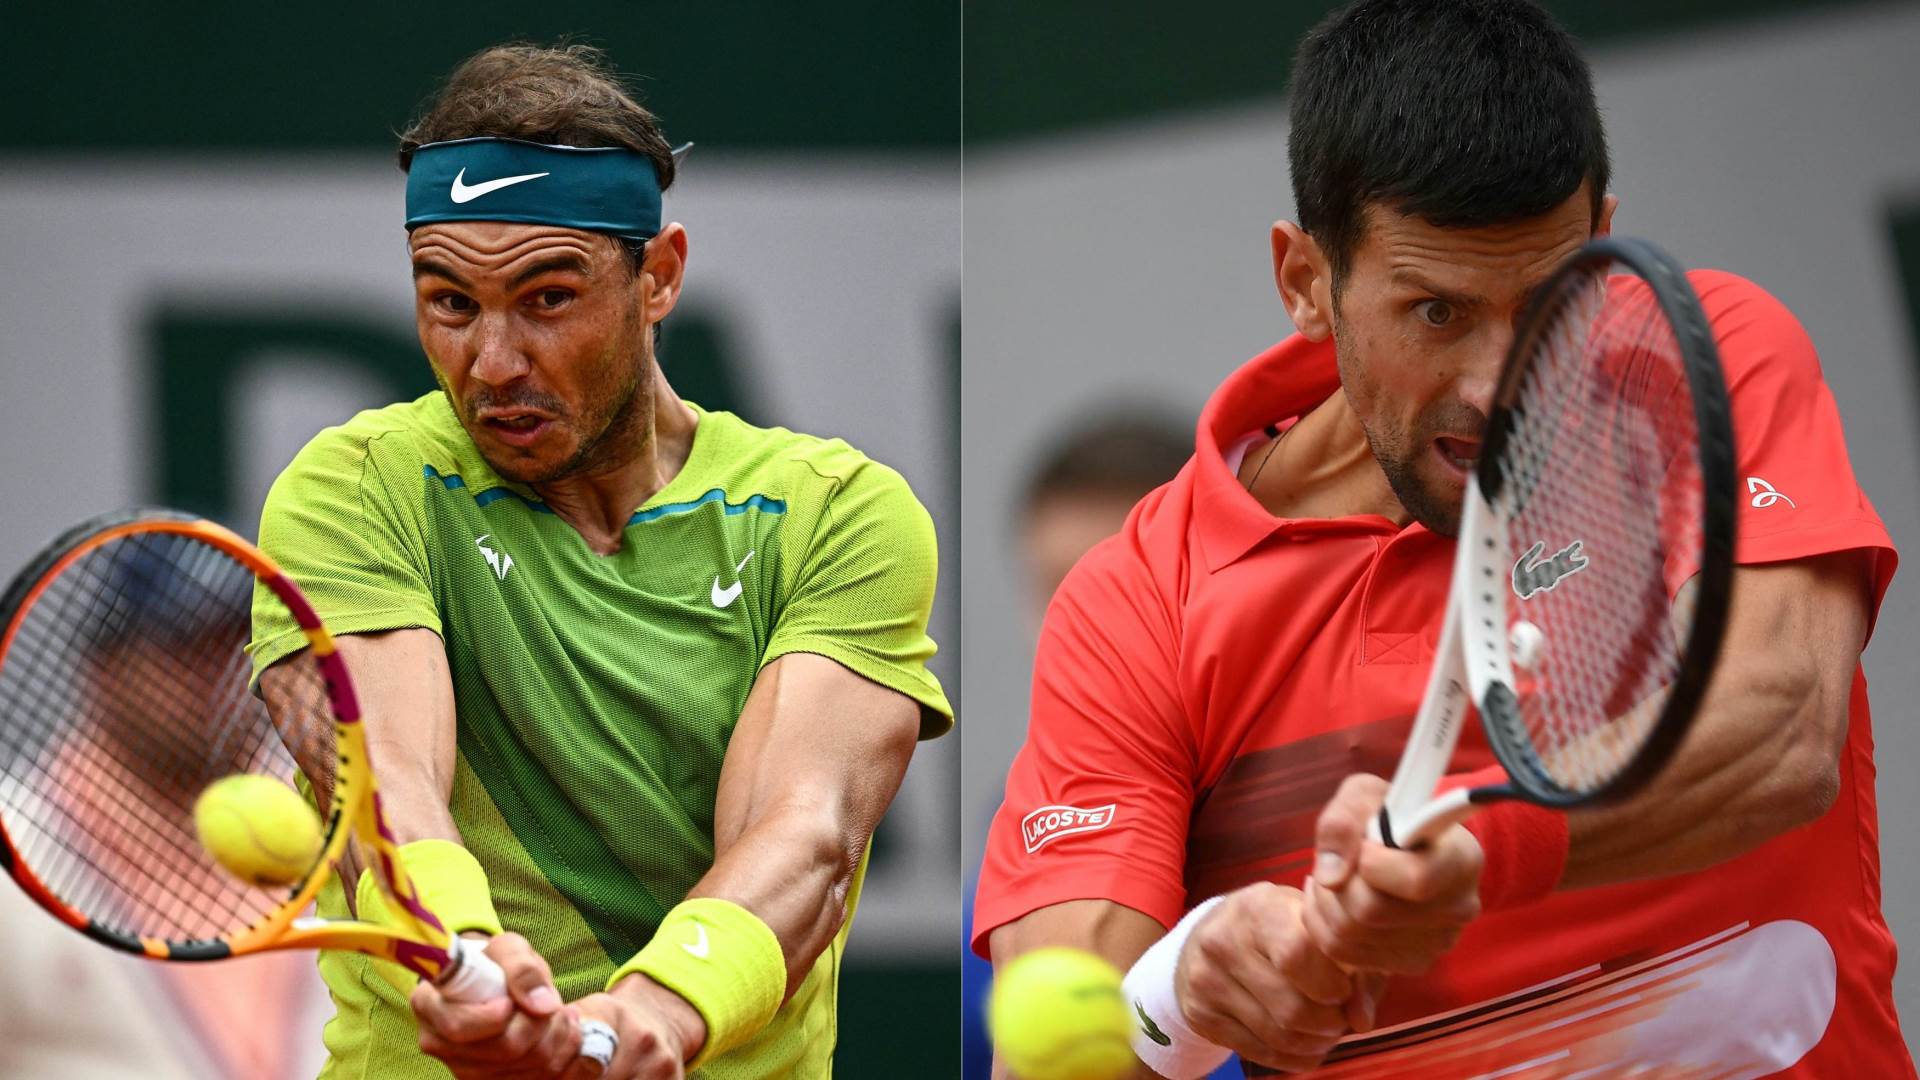  Rafael Nadal smatra da Novak Đoković nije izraziti favorit na Australijan openu 